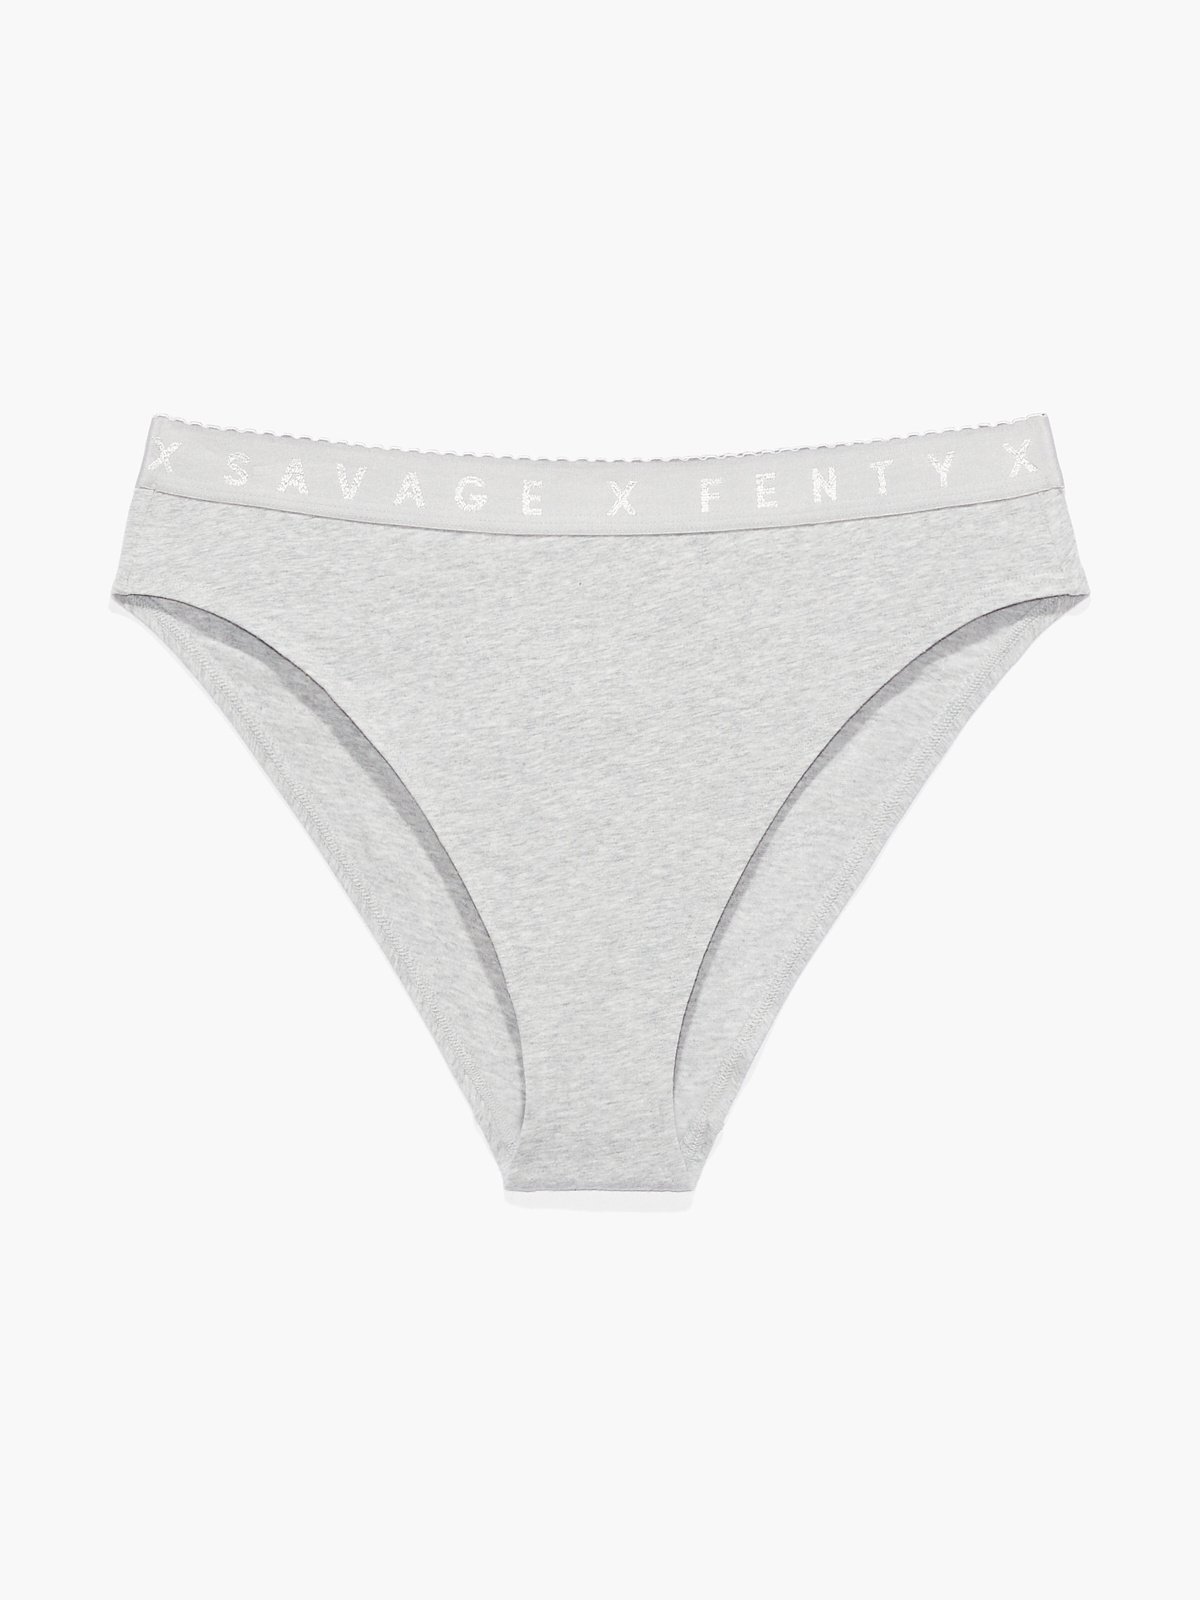 Savage X Cotton High-Leg Bikini Panty in Grey